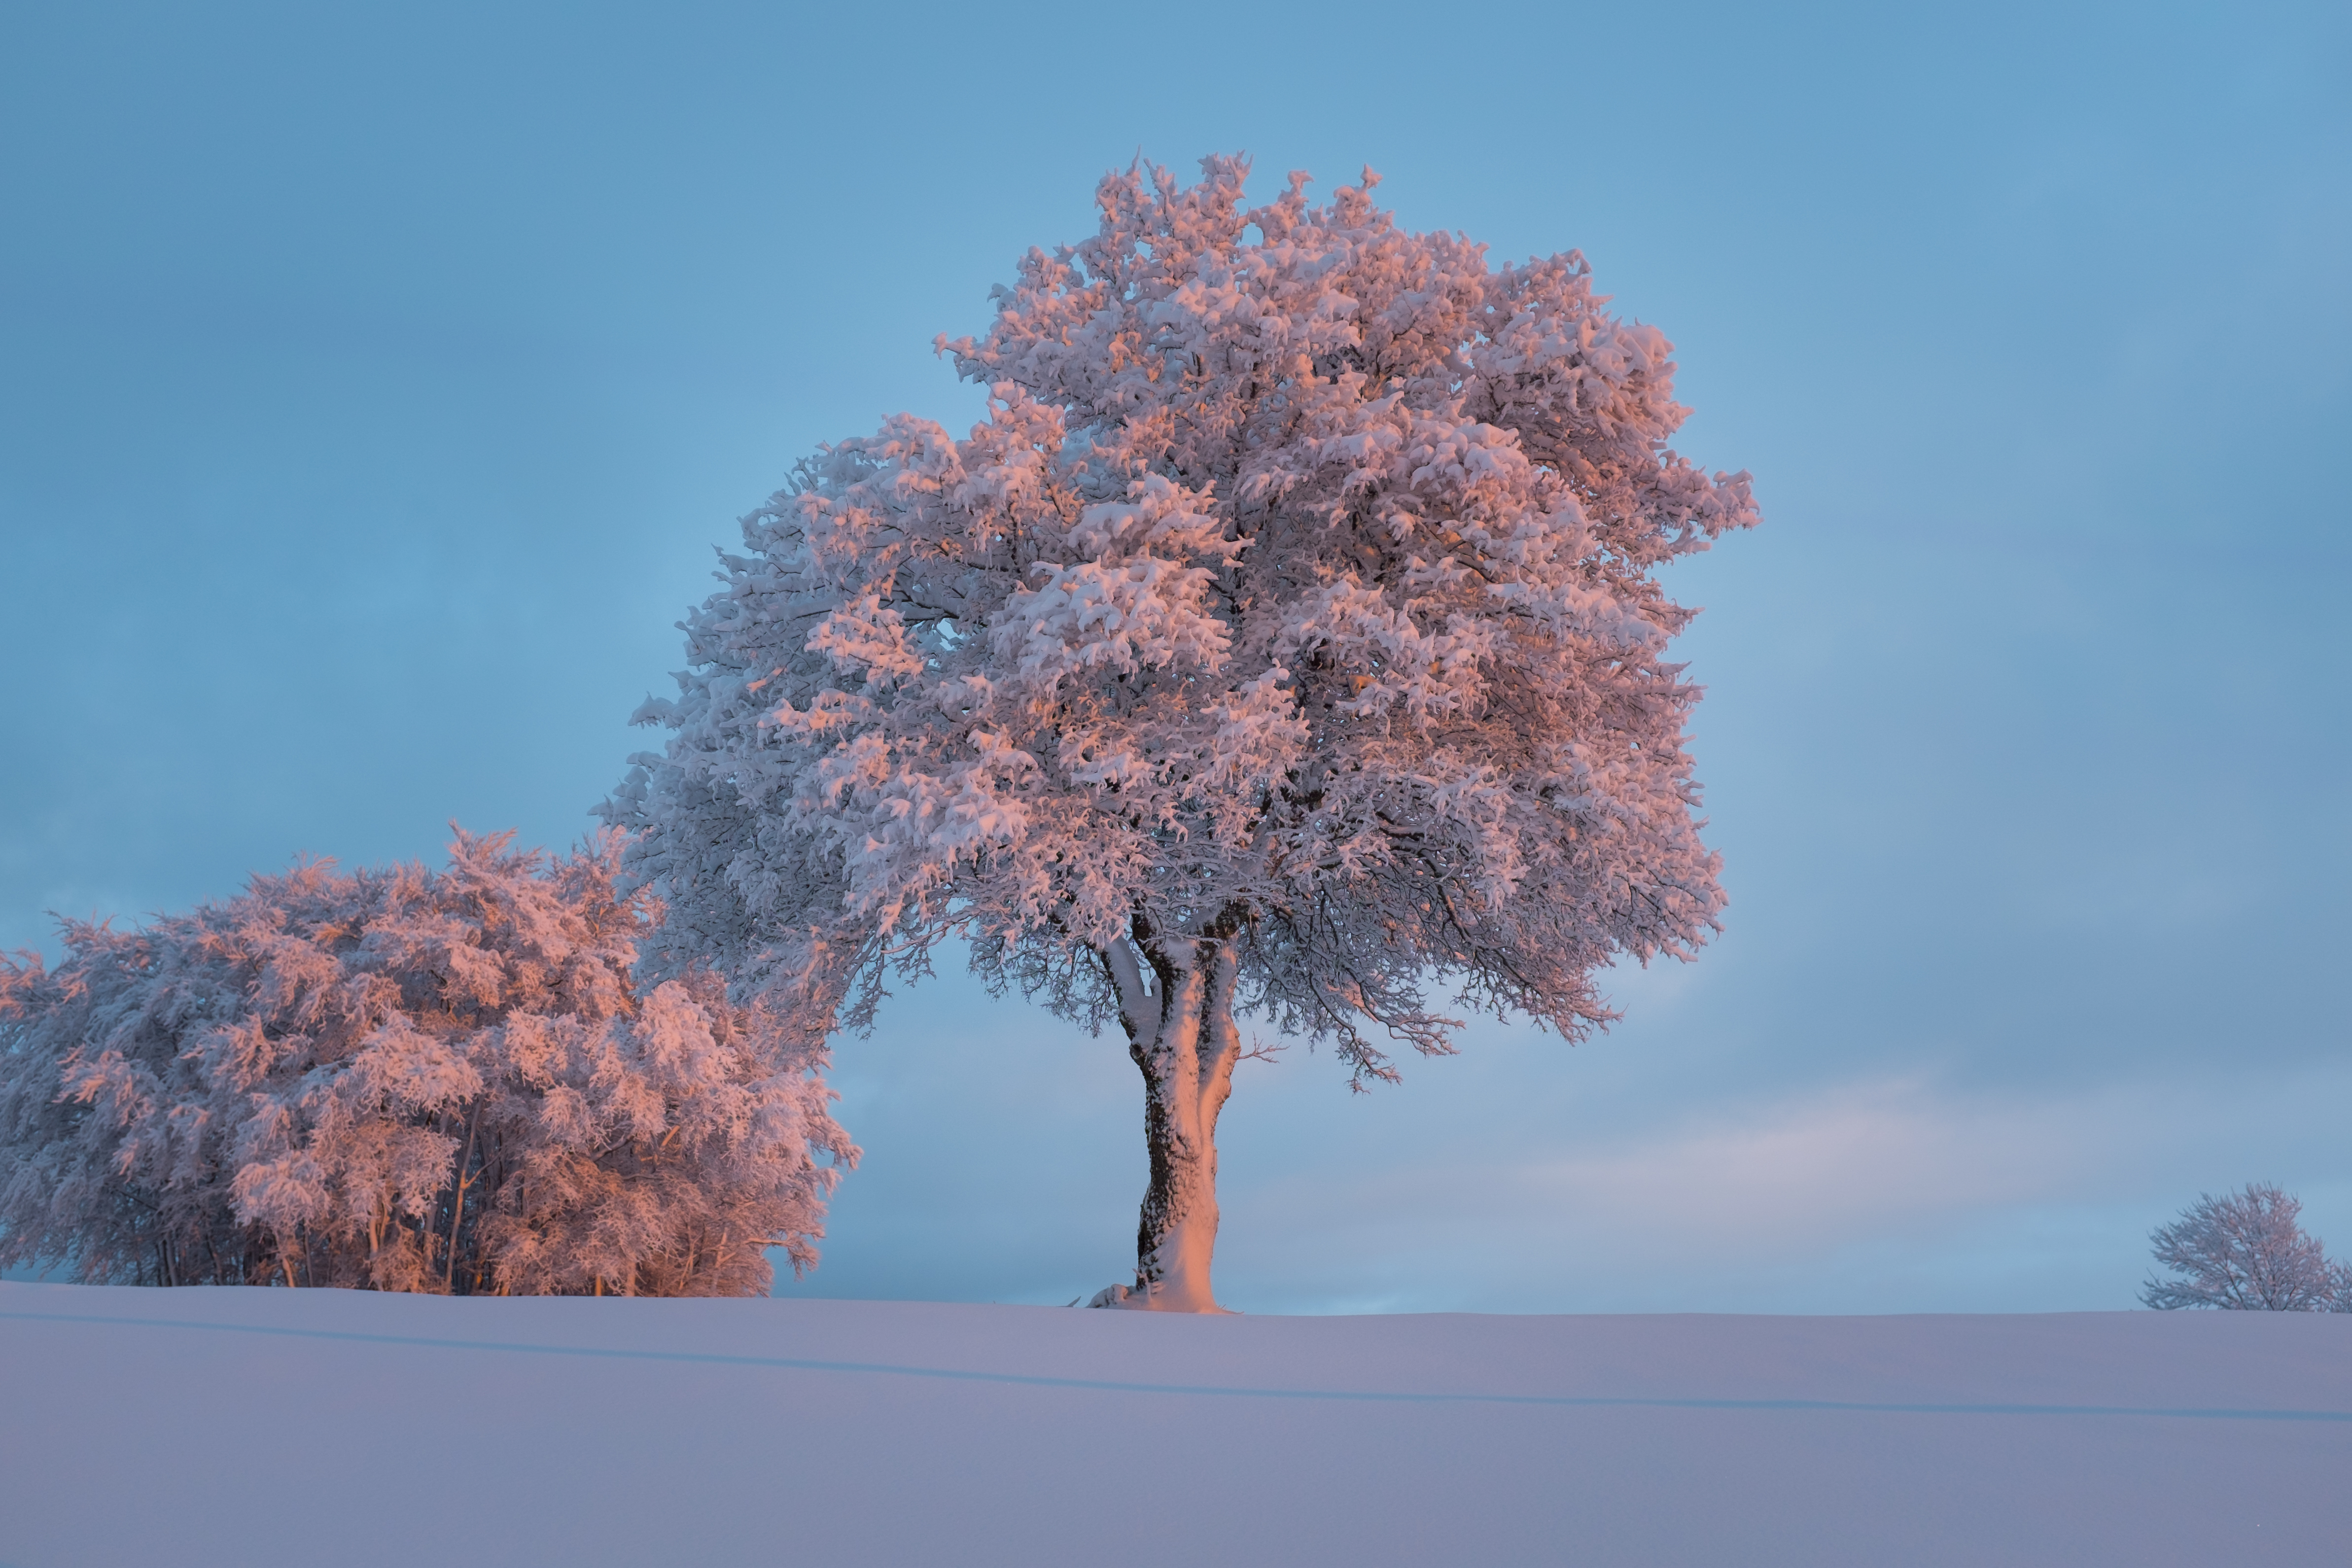 Скачать обои бесплатно Дерево, Заснеженный, Природа, Снег, Иней, Зима картинка на рабочий стол ПК